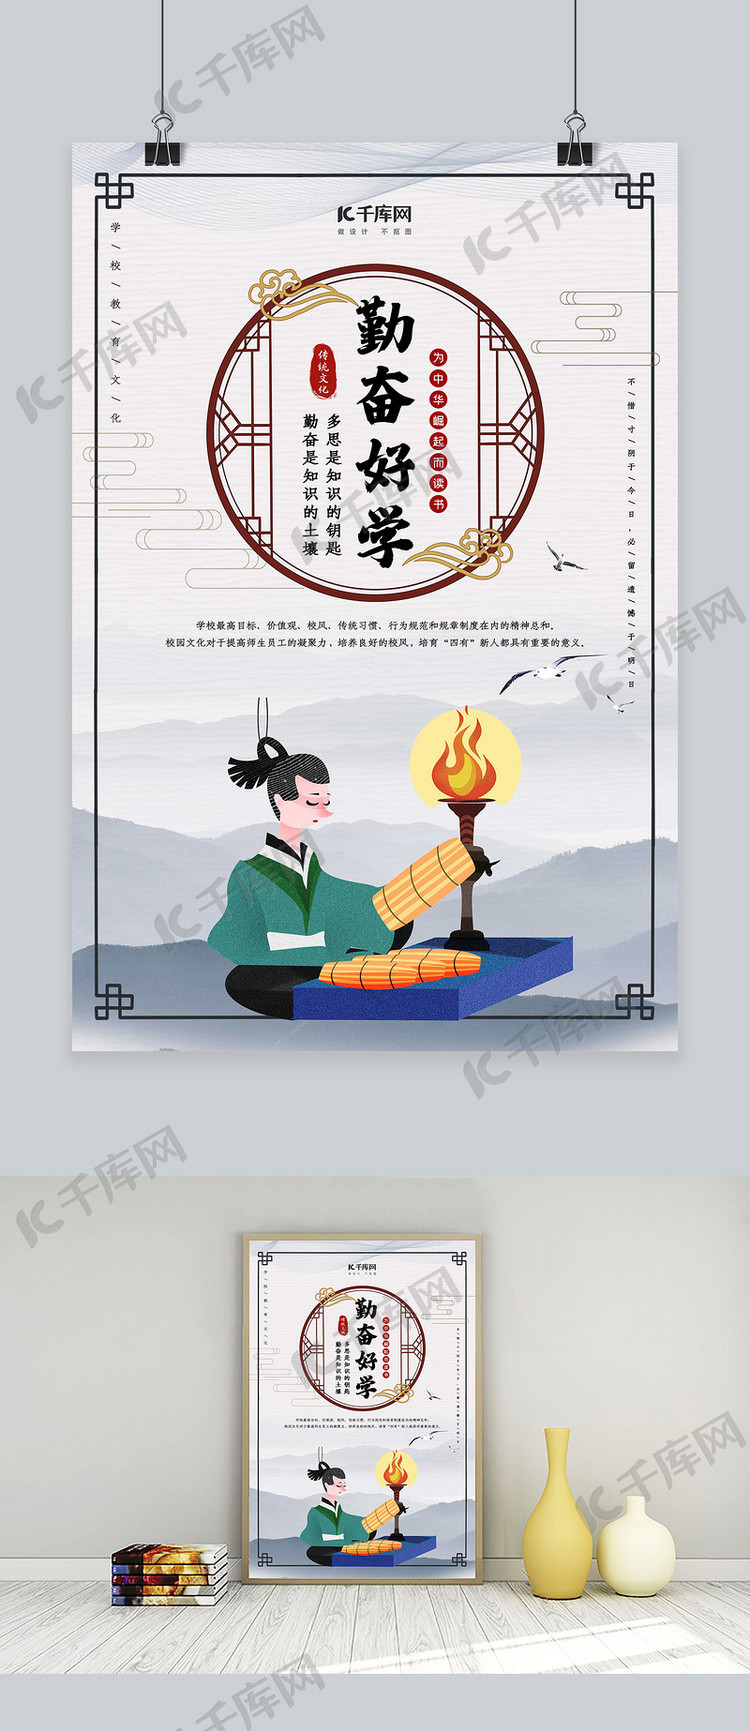 简洁大气中国风学校教育文化海报